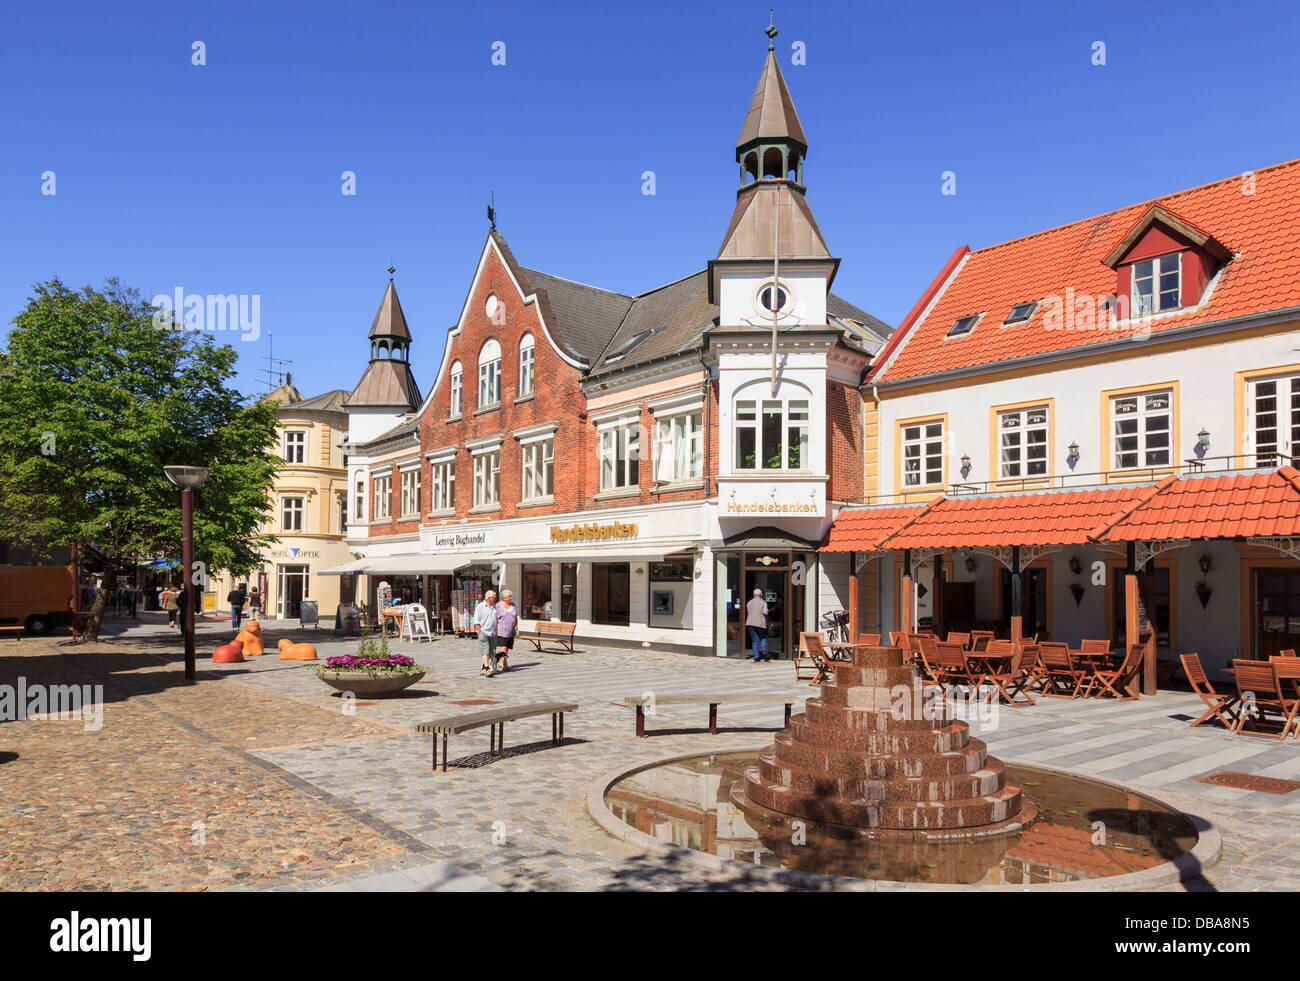 Tiendas, Handelsbanken banco y café en la plaza del centro de la ciudad. Lemvig, Midtjylland, Central de Jutlandia, Dinamarca, Escandinavia, Europa Foto de stock